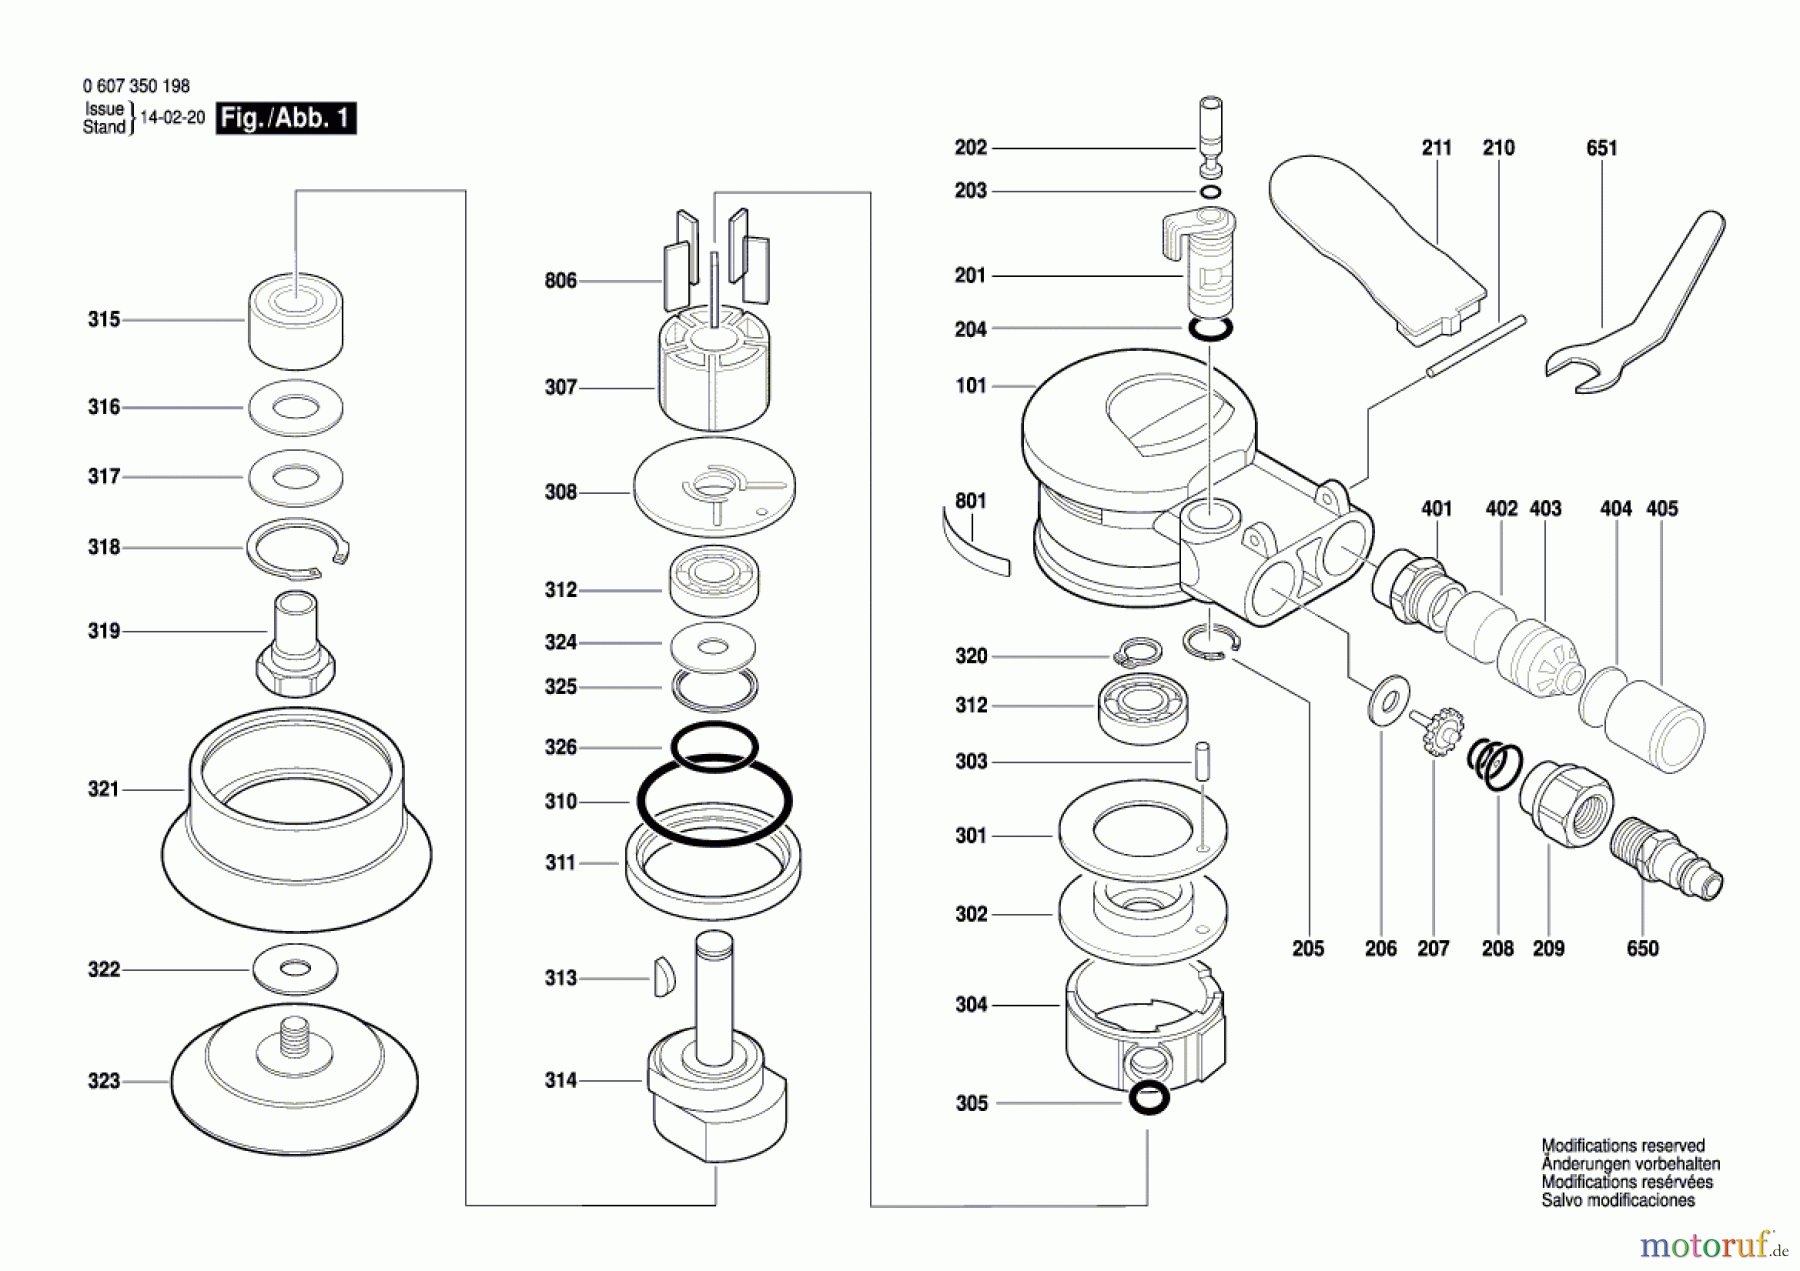  Bosch Werkzeug Exzenterschleifer DEX 80 Seite 1